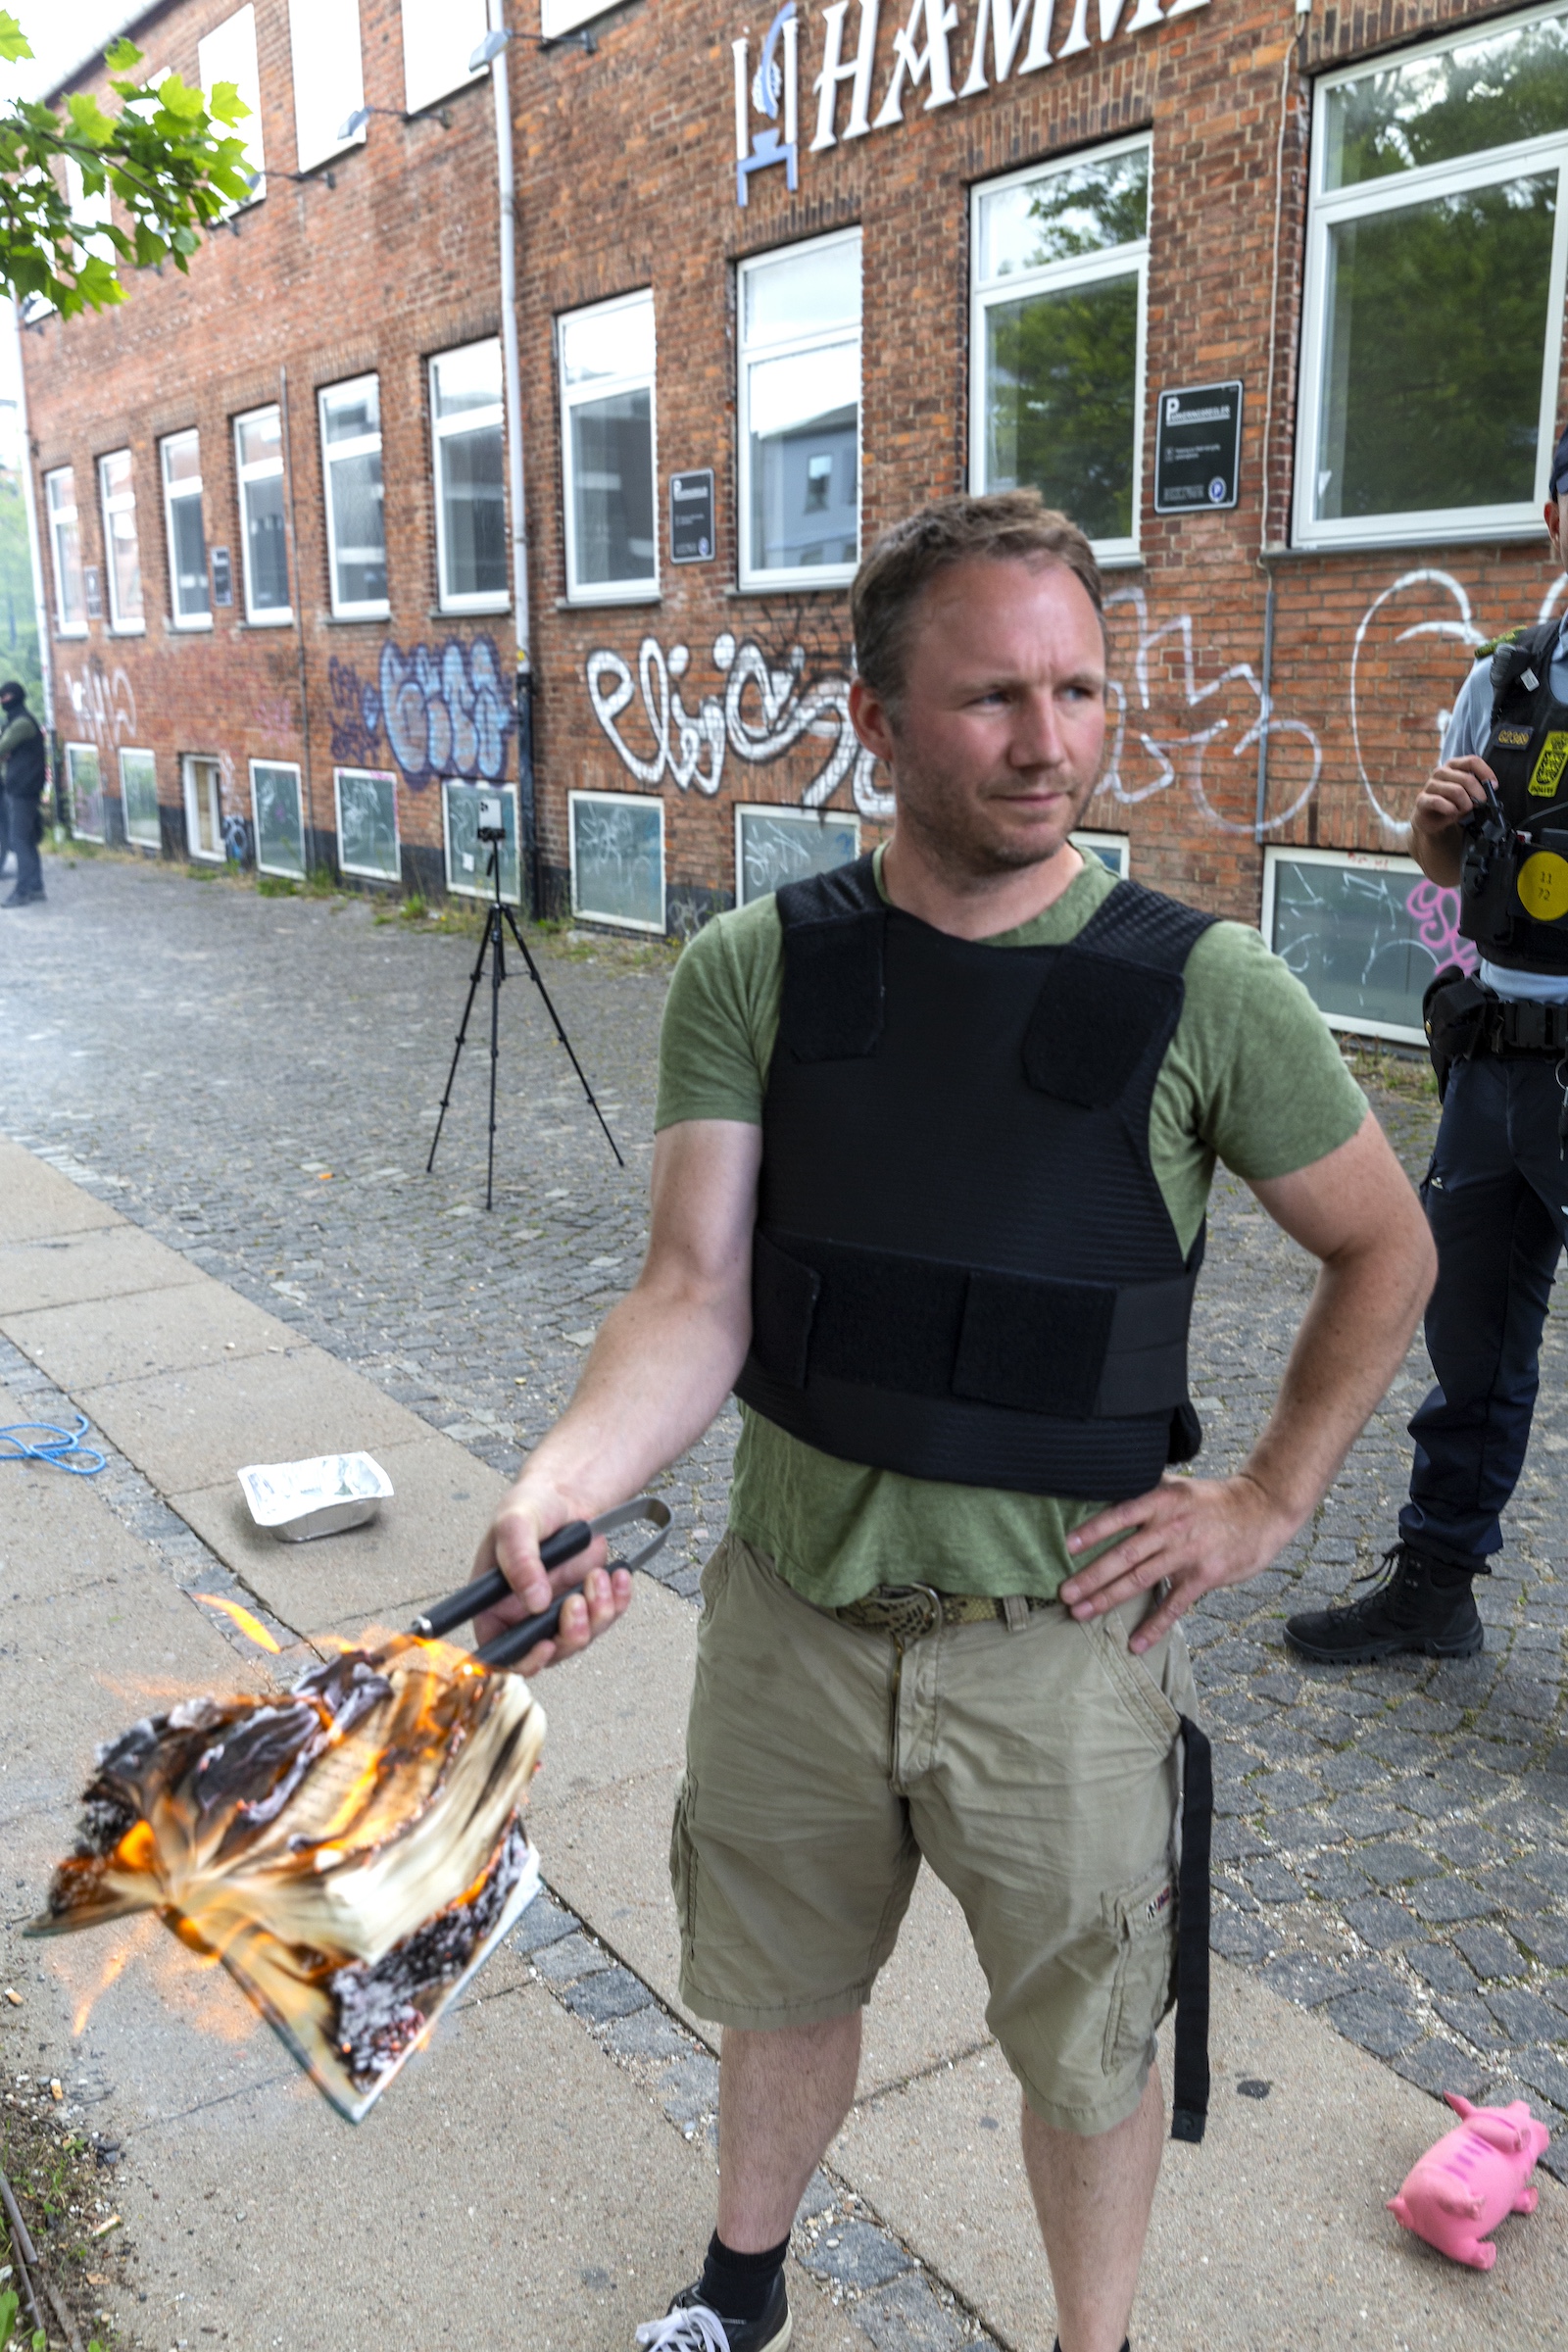 Quran burned by Danish Activists demark